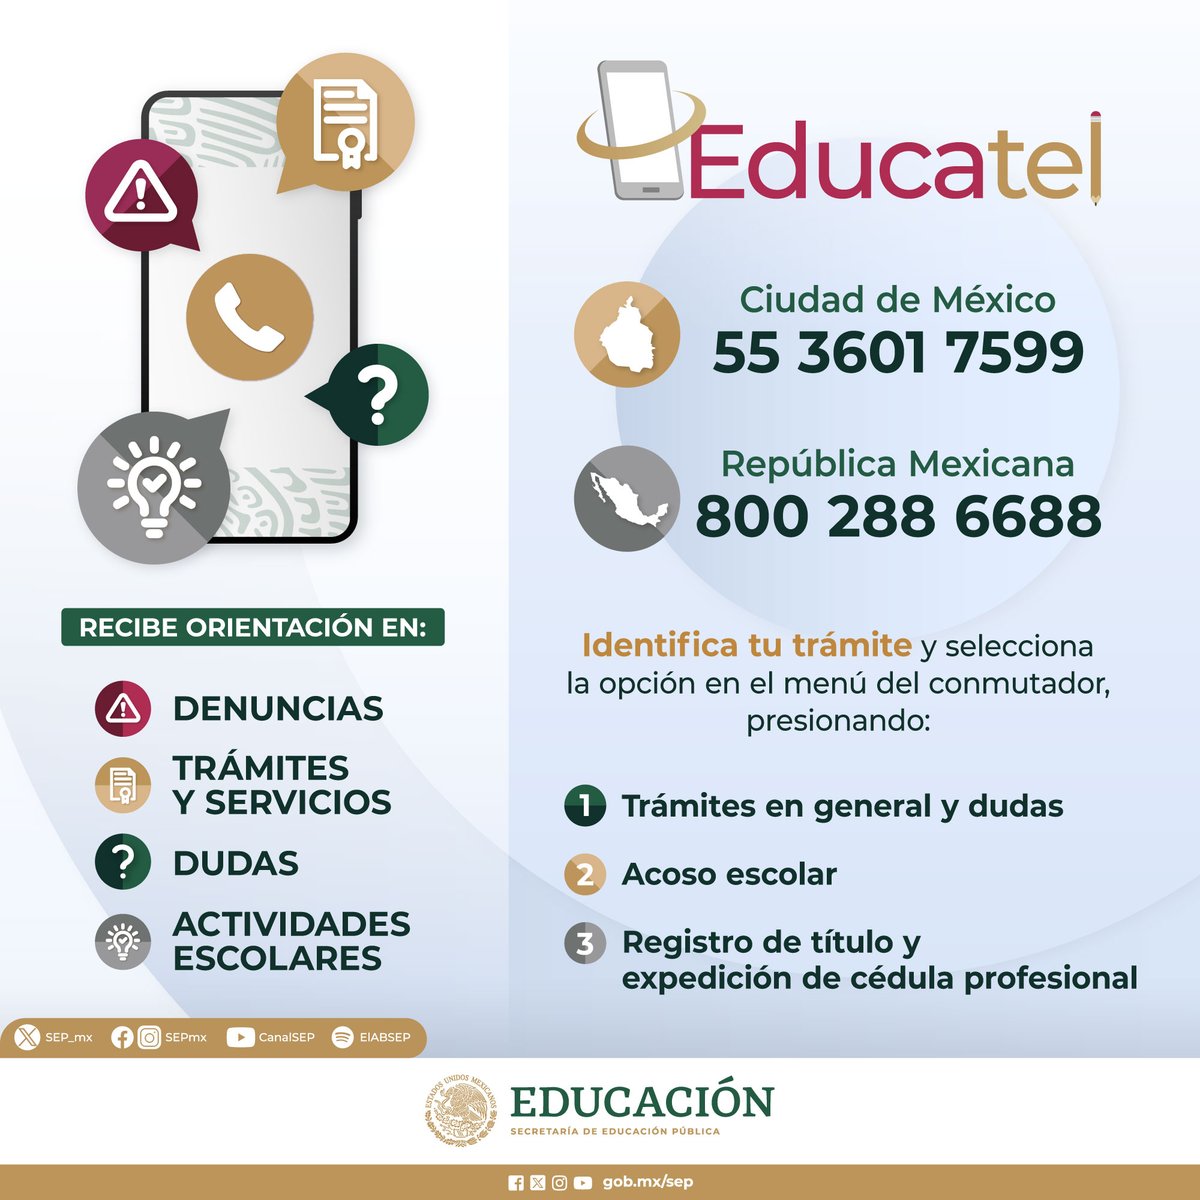 🤔 Necesitas ayuda con:

📄 Trámites
📚 Servicios educativos
🏃🏻 Actividades escolares
🚫 Denuncias

Recuerda que #Educatel puede ayudarte.

☎️ Comunícate a los teléfonos:
En #CDMX: 55 3601 7599
Resto de la República: 800 288 6688